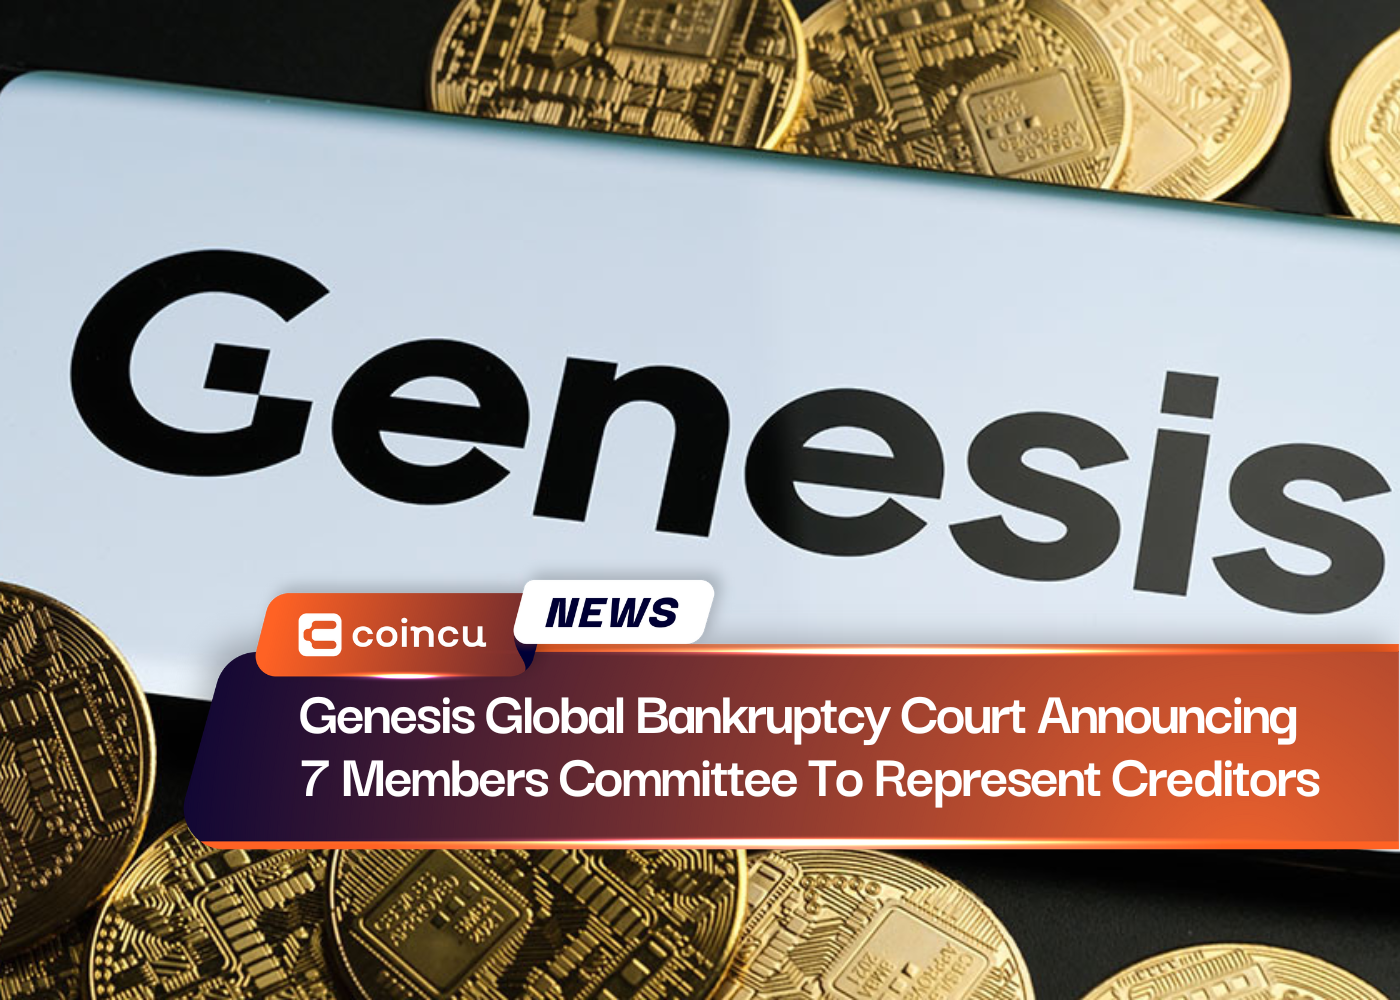 Глобальный суд по делам о банкротстве Genesis объявляет о назначении комитета из 7 членов, которые будут представлять кредиторов